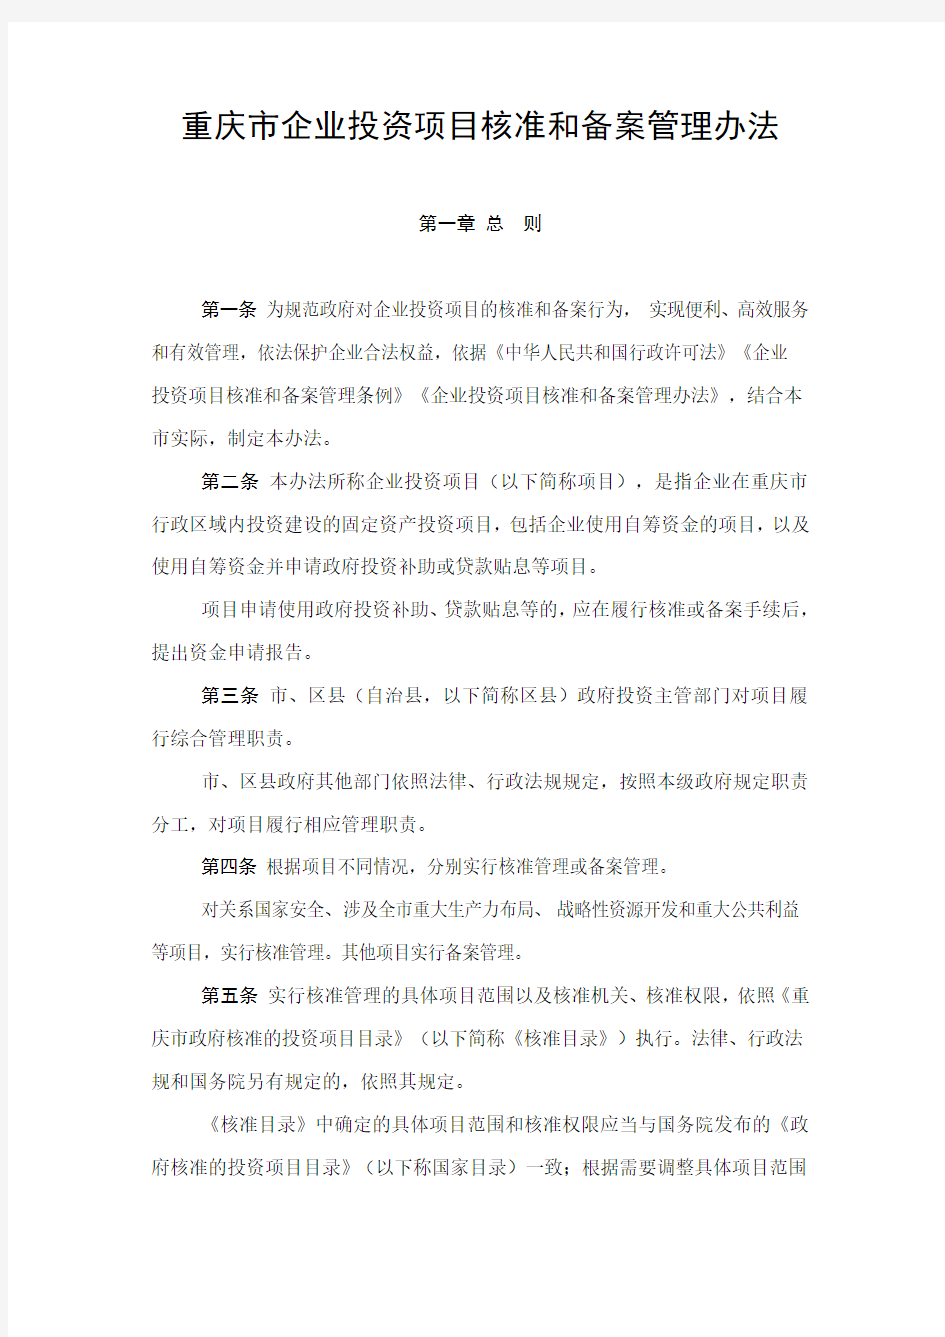 重庆市企业投资项目核准和备案管理办法